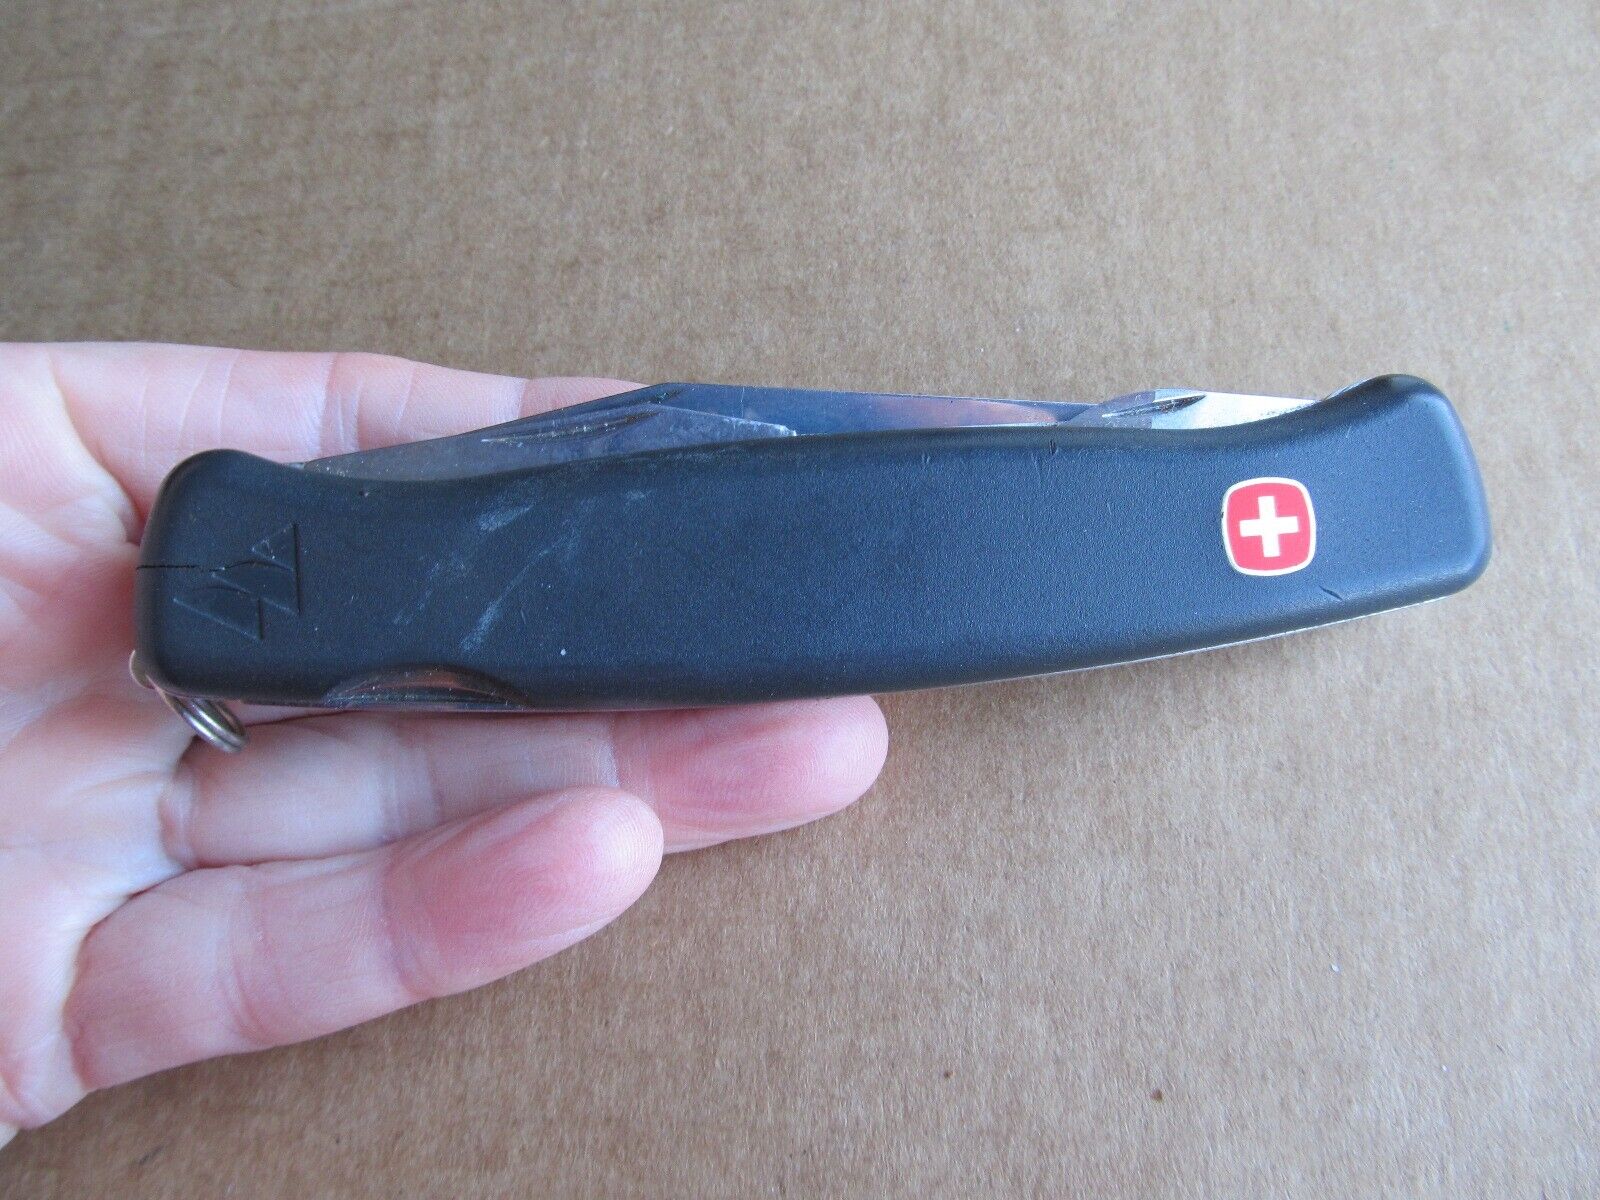 Wenger Delemont Ranger Swiss Army Knife Folder - Lock Blade